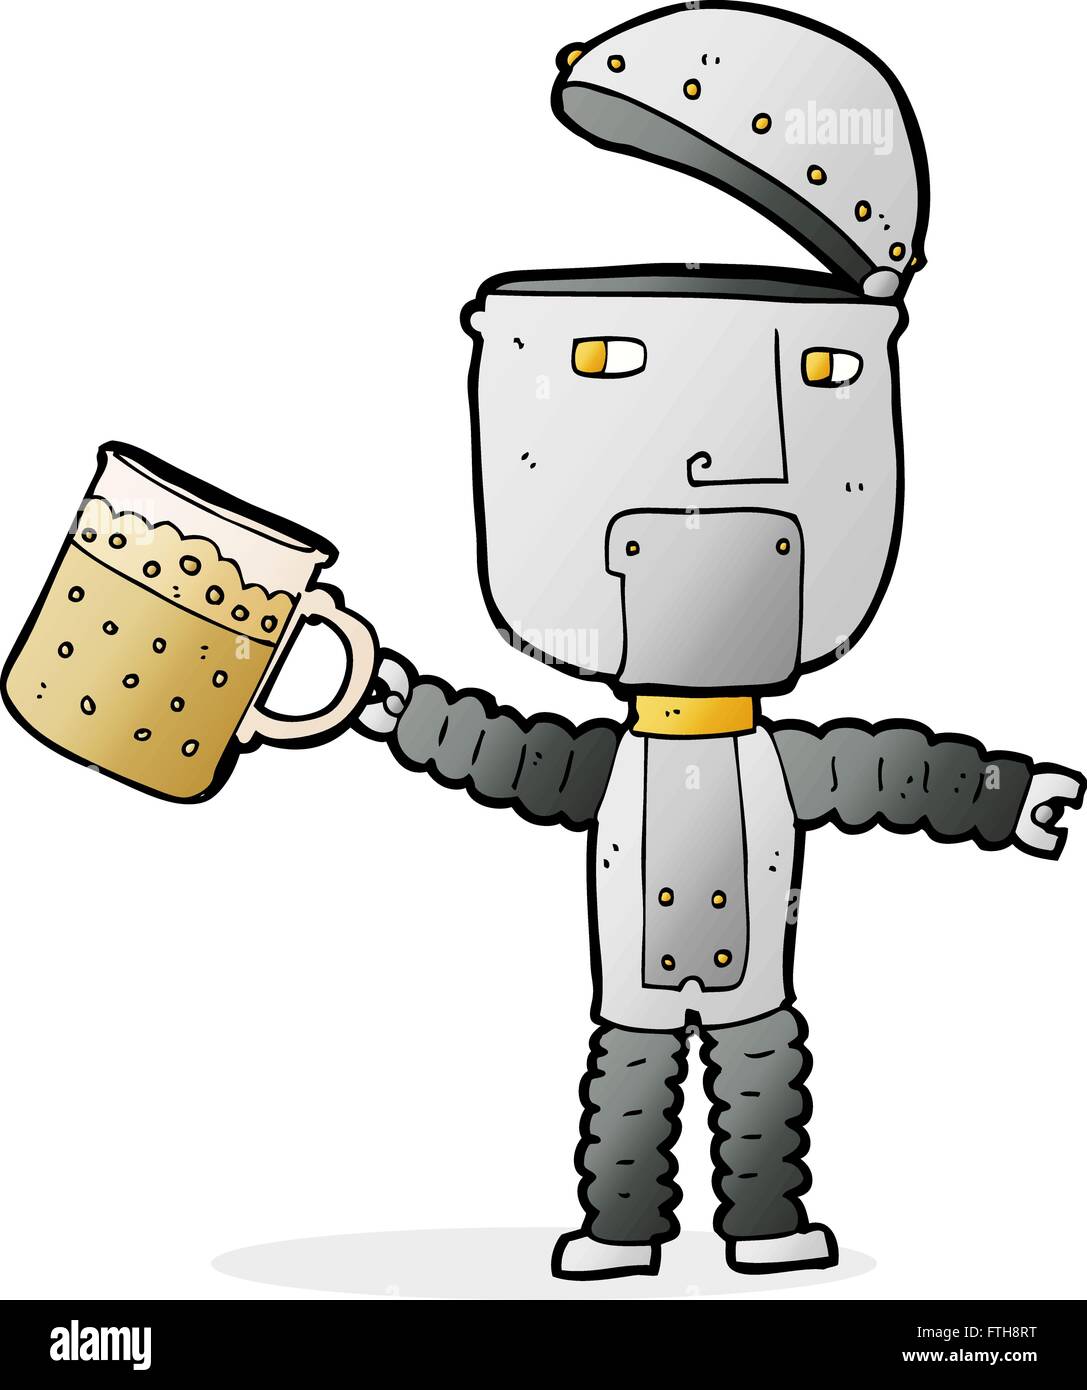 cartoon robot drinking beer Stock Vector Image & Art - Alamy